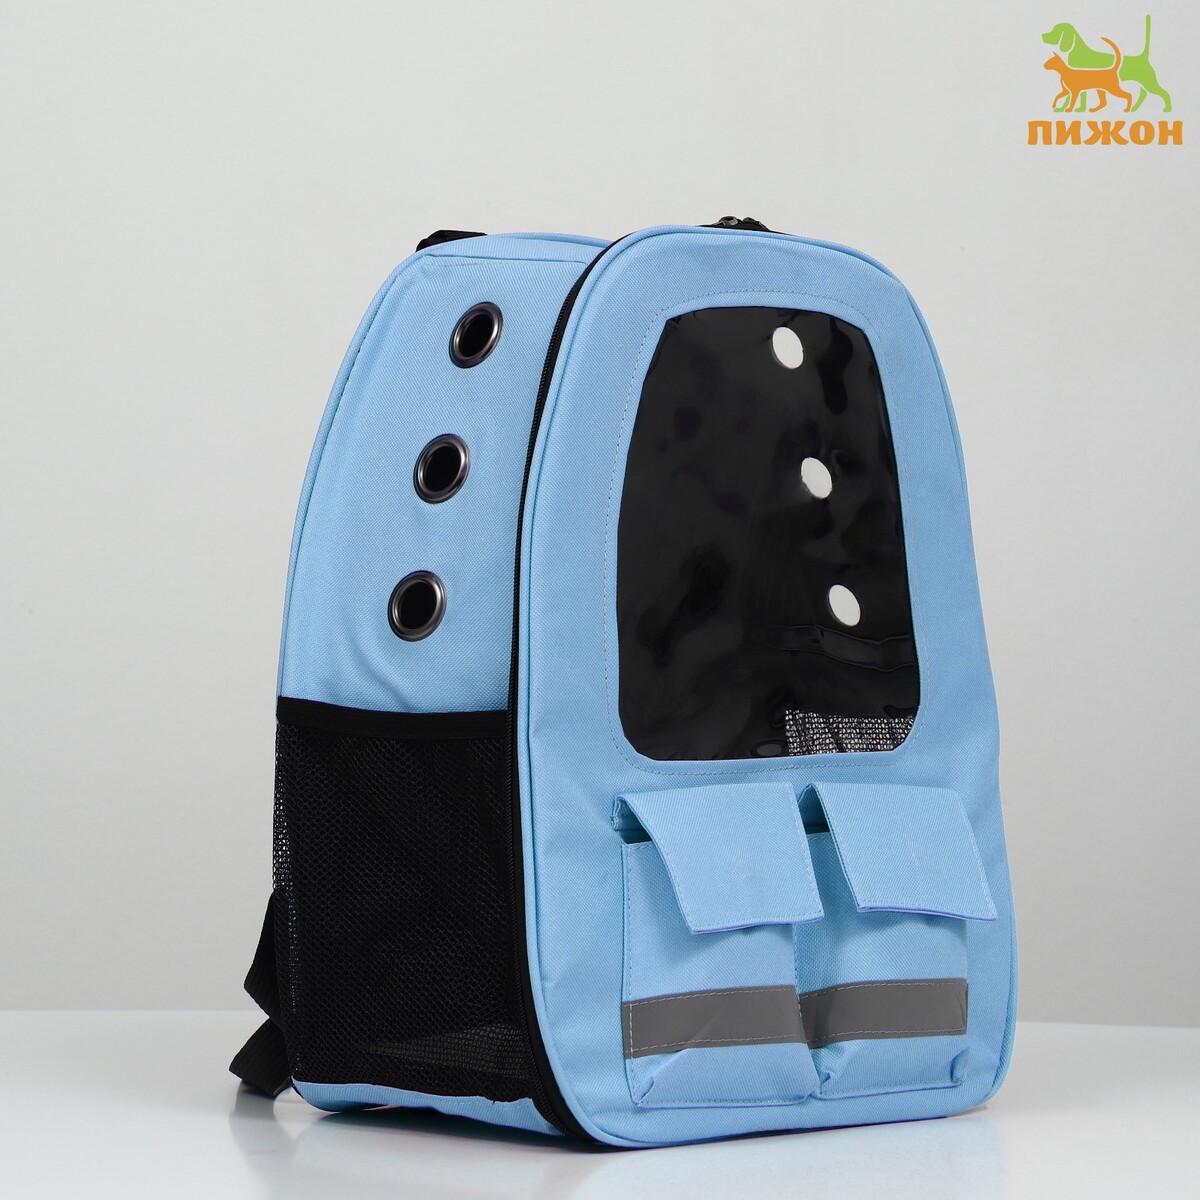 Рюкзак для переноски животных с окном для обзора, голубой рюкзак для переноски животных с окном для обзора 32 х 22 х 43 см голубой